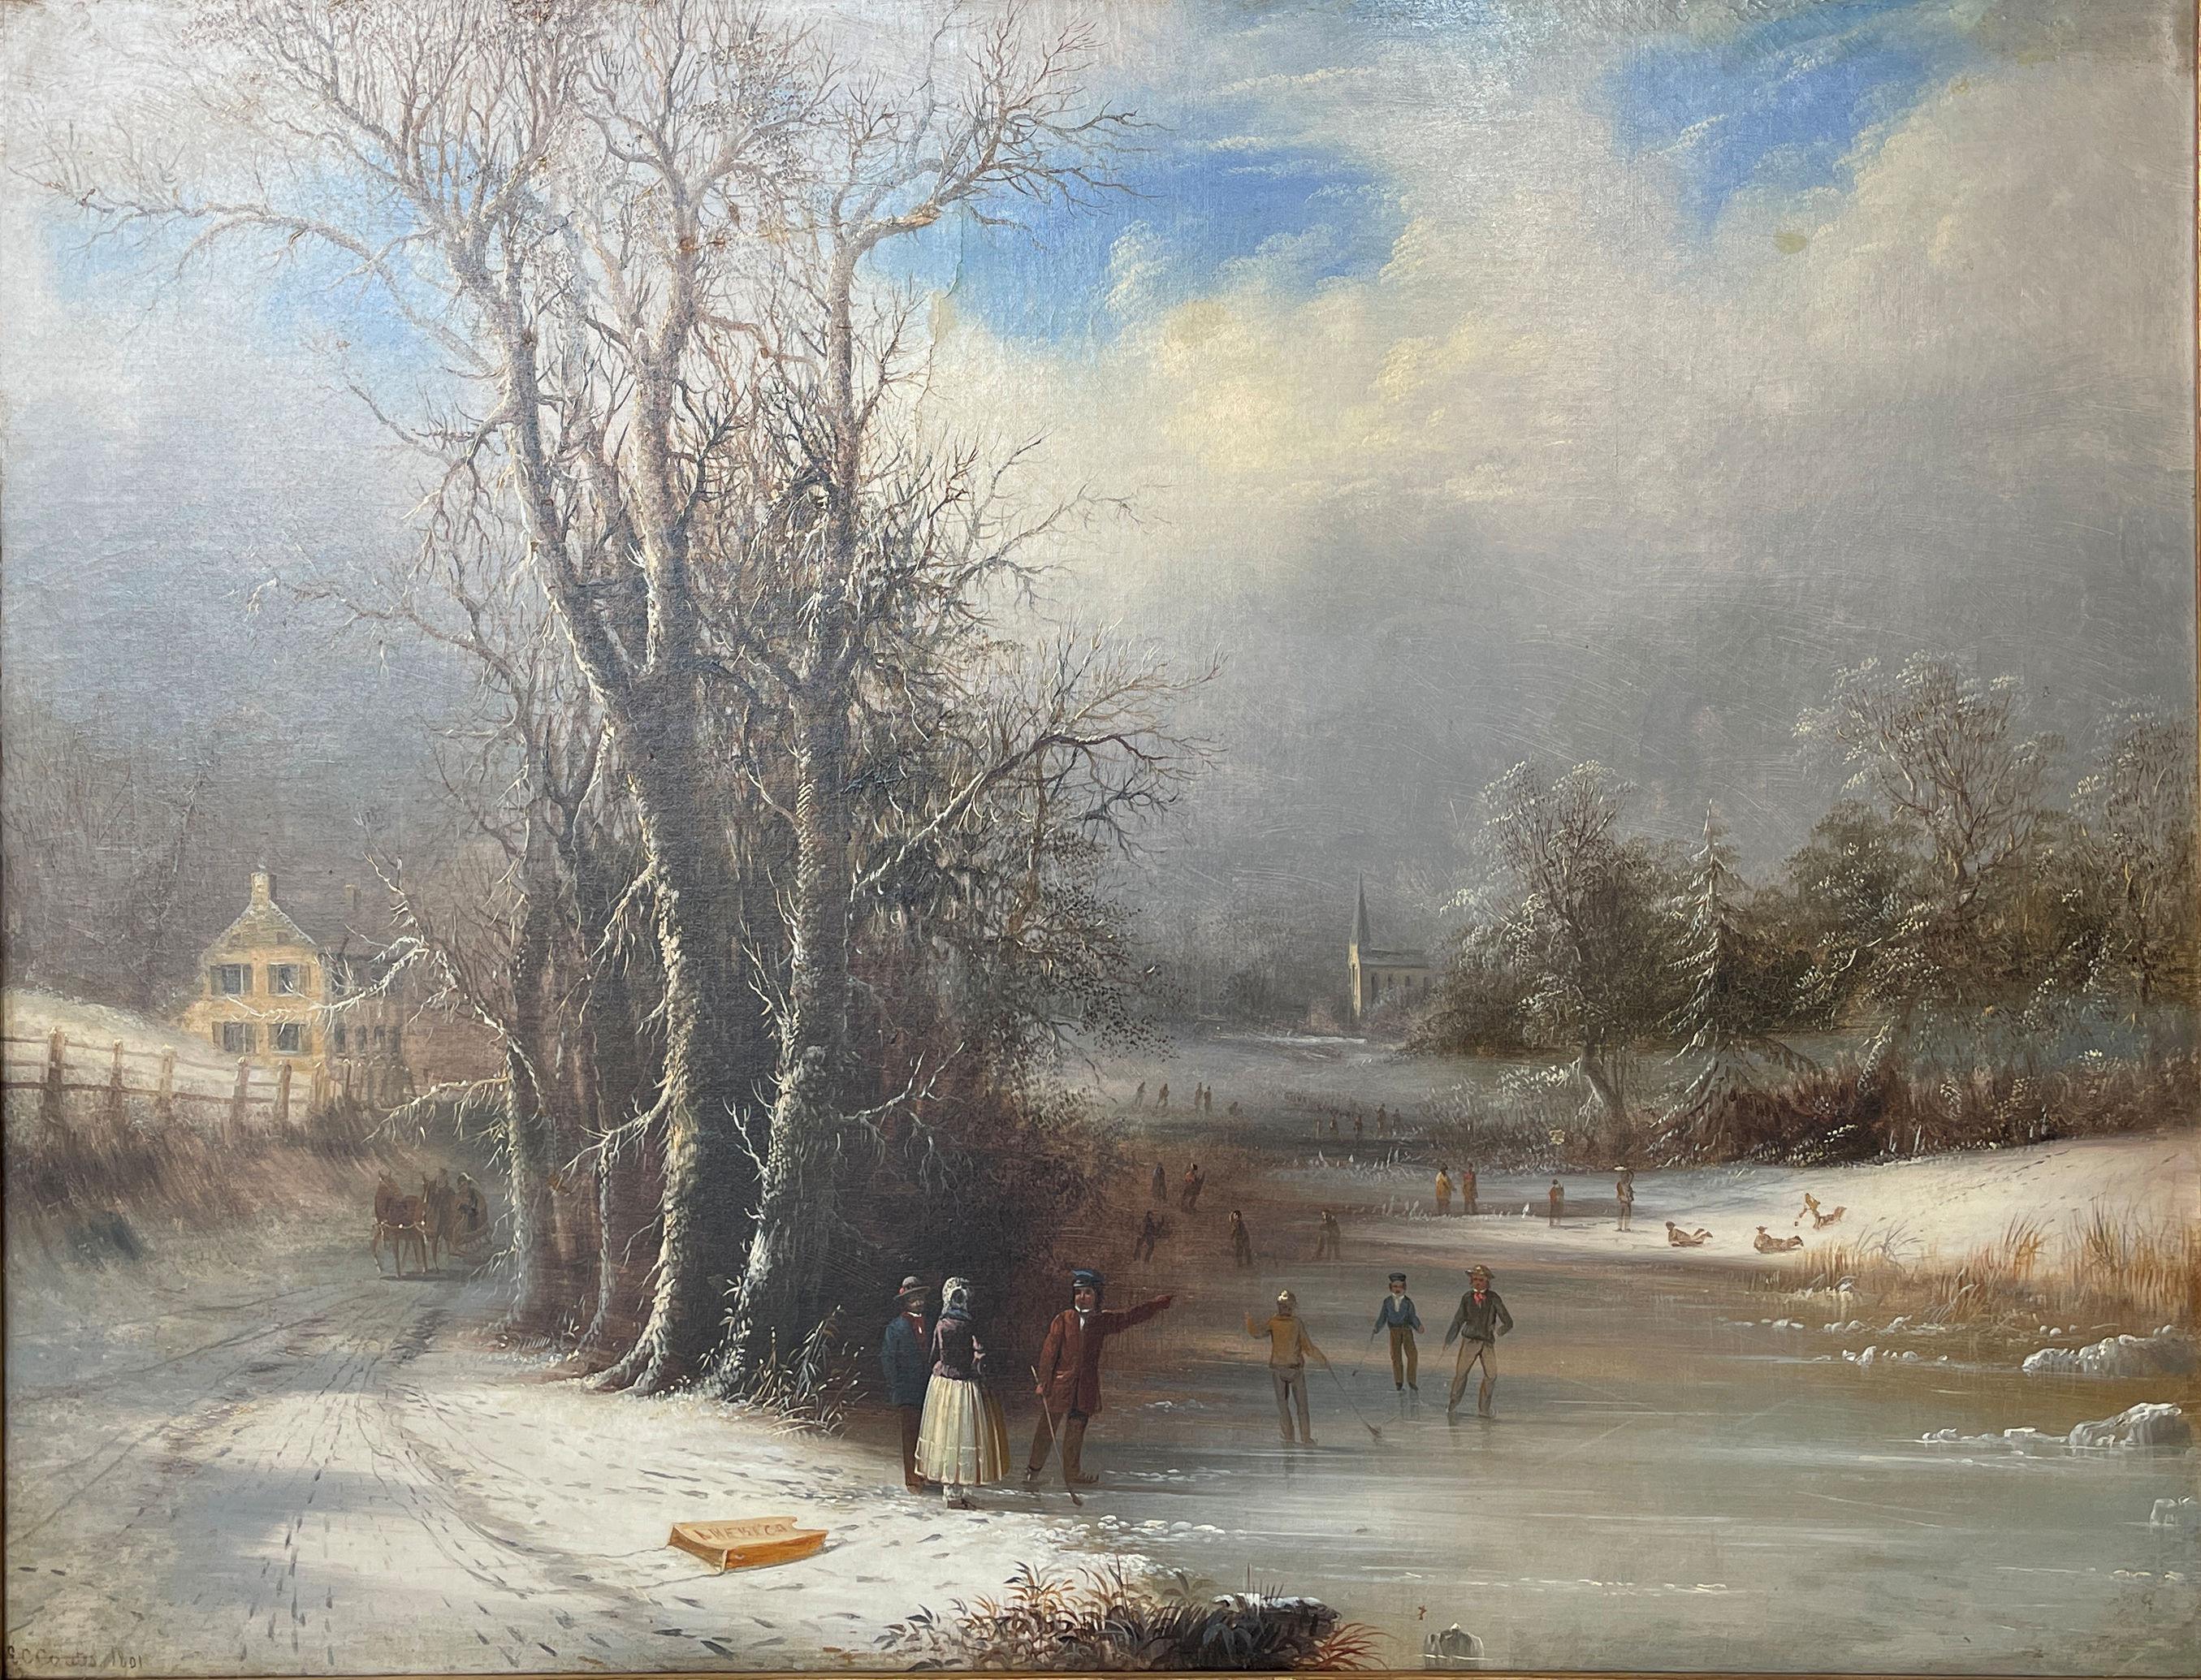 Landscape Painting Edmund C. Coates - « Américain », Edmund Coates, Hudson River School, Guerre de Sécession, Paysage de patineurs sur les flèches